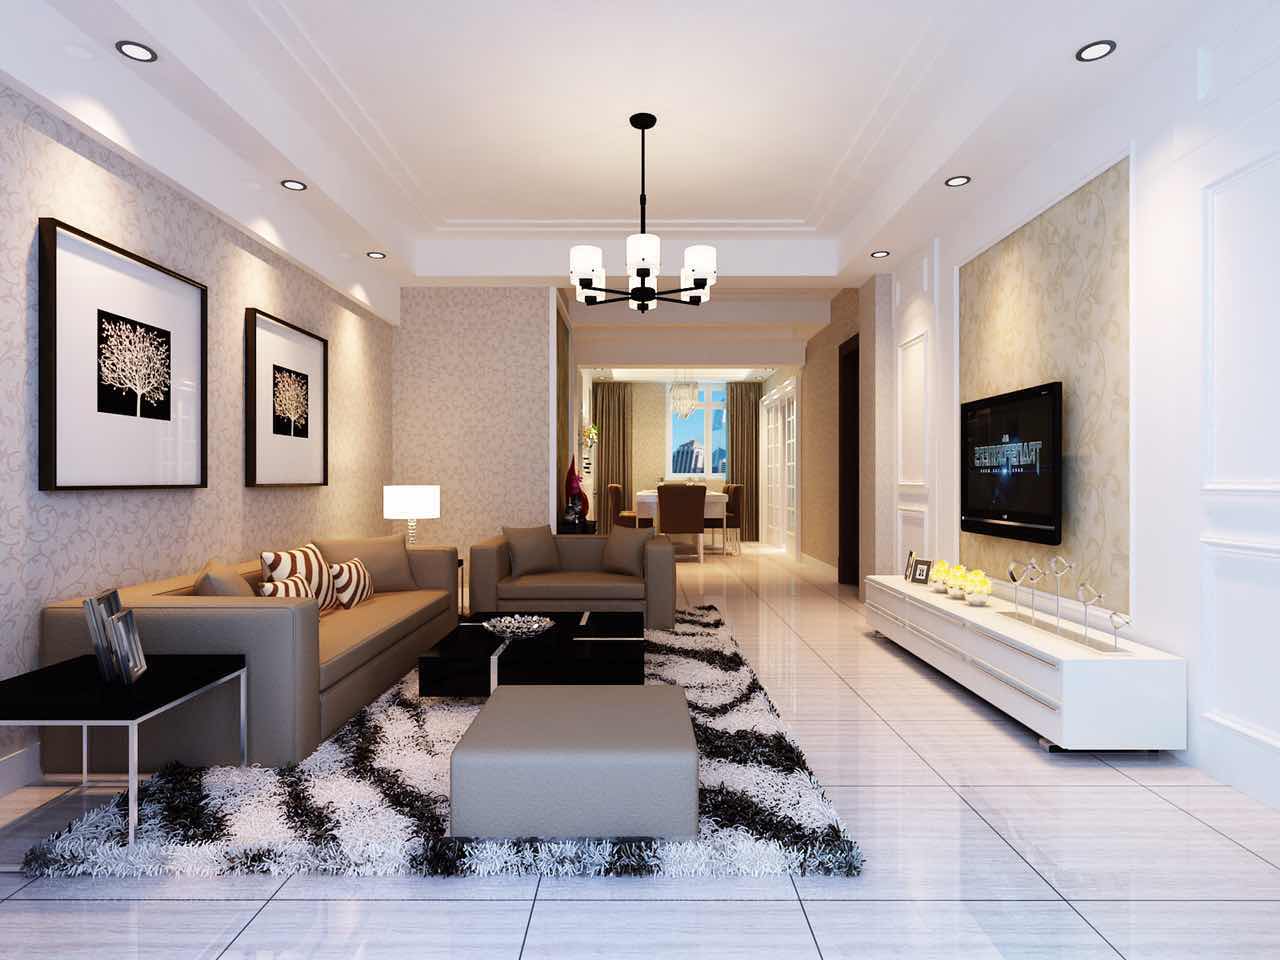 千度东山晴 - 其它风格三室一厅装修效果图 - 王琦设计效果图 - 每平每屋·设计家